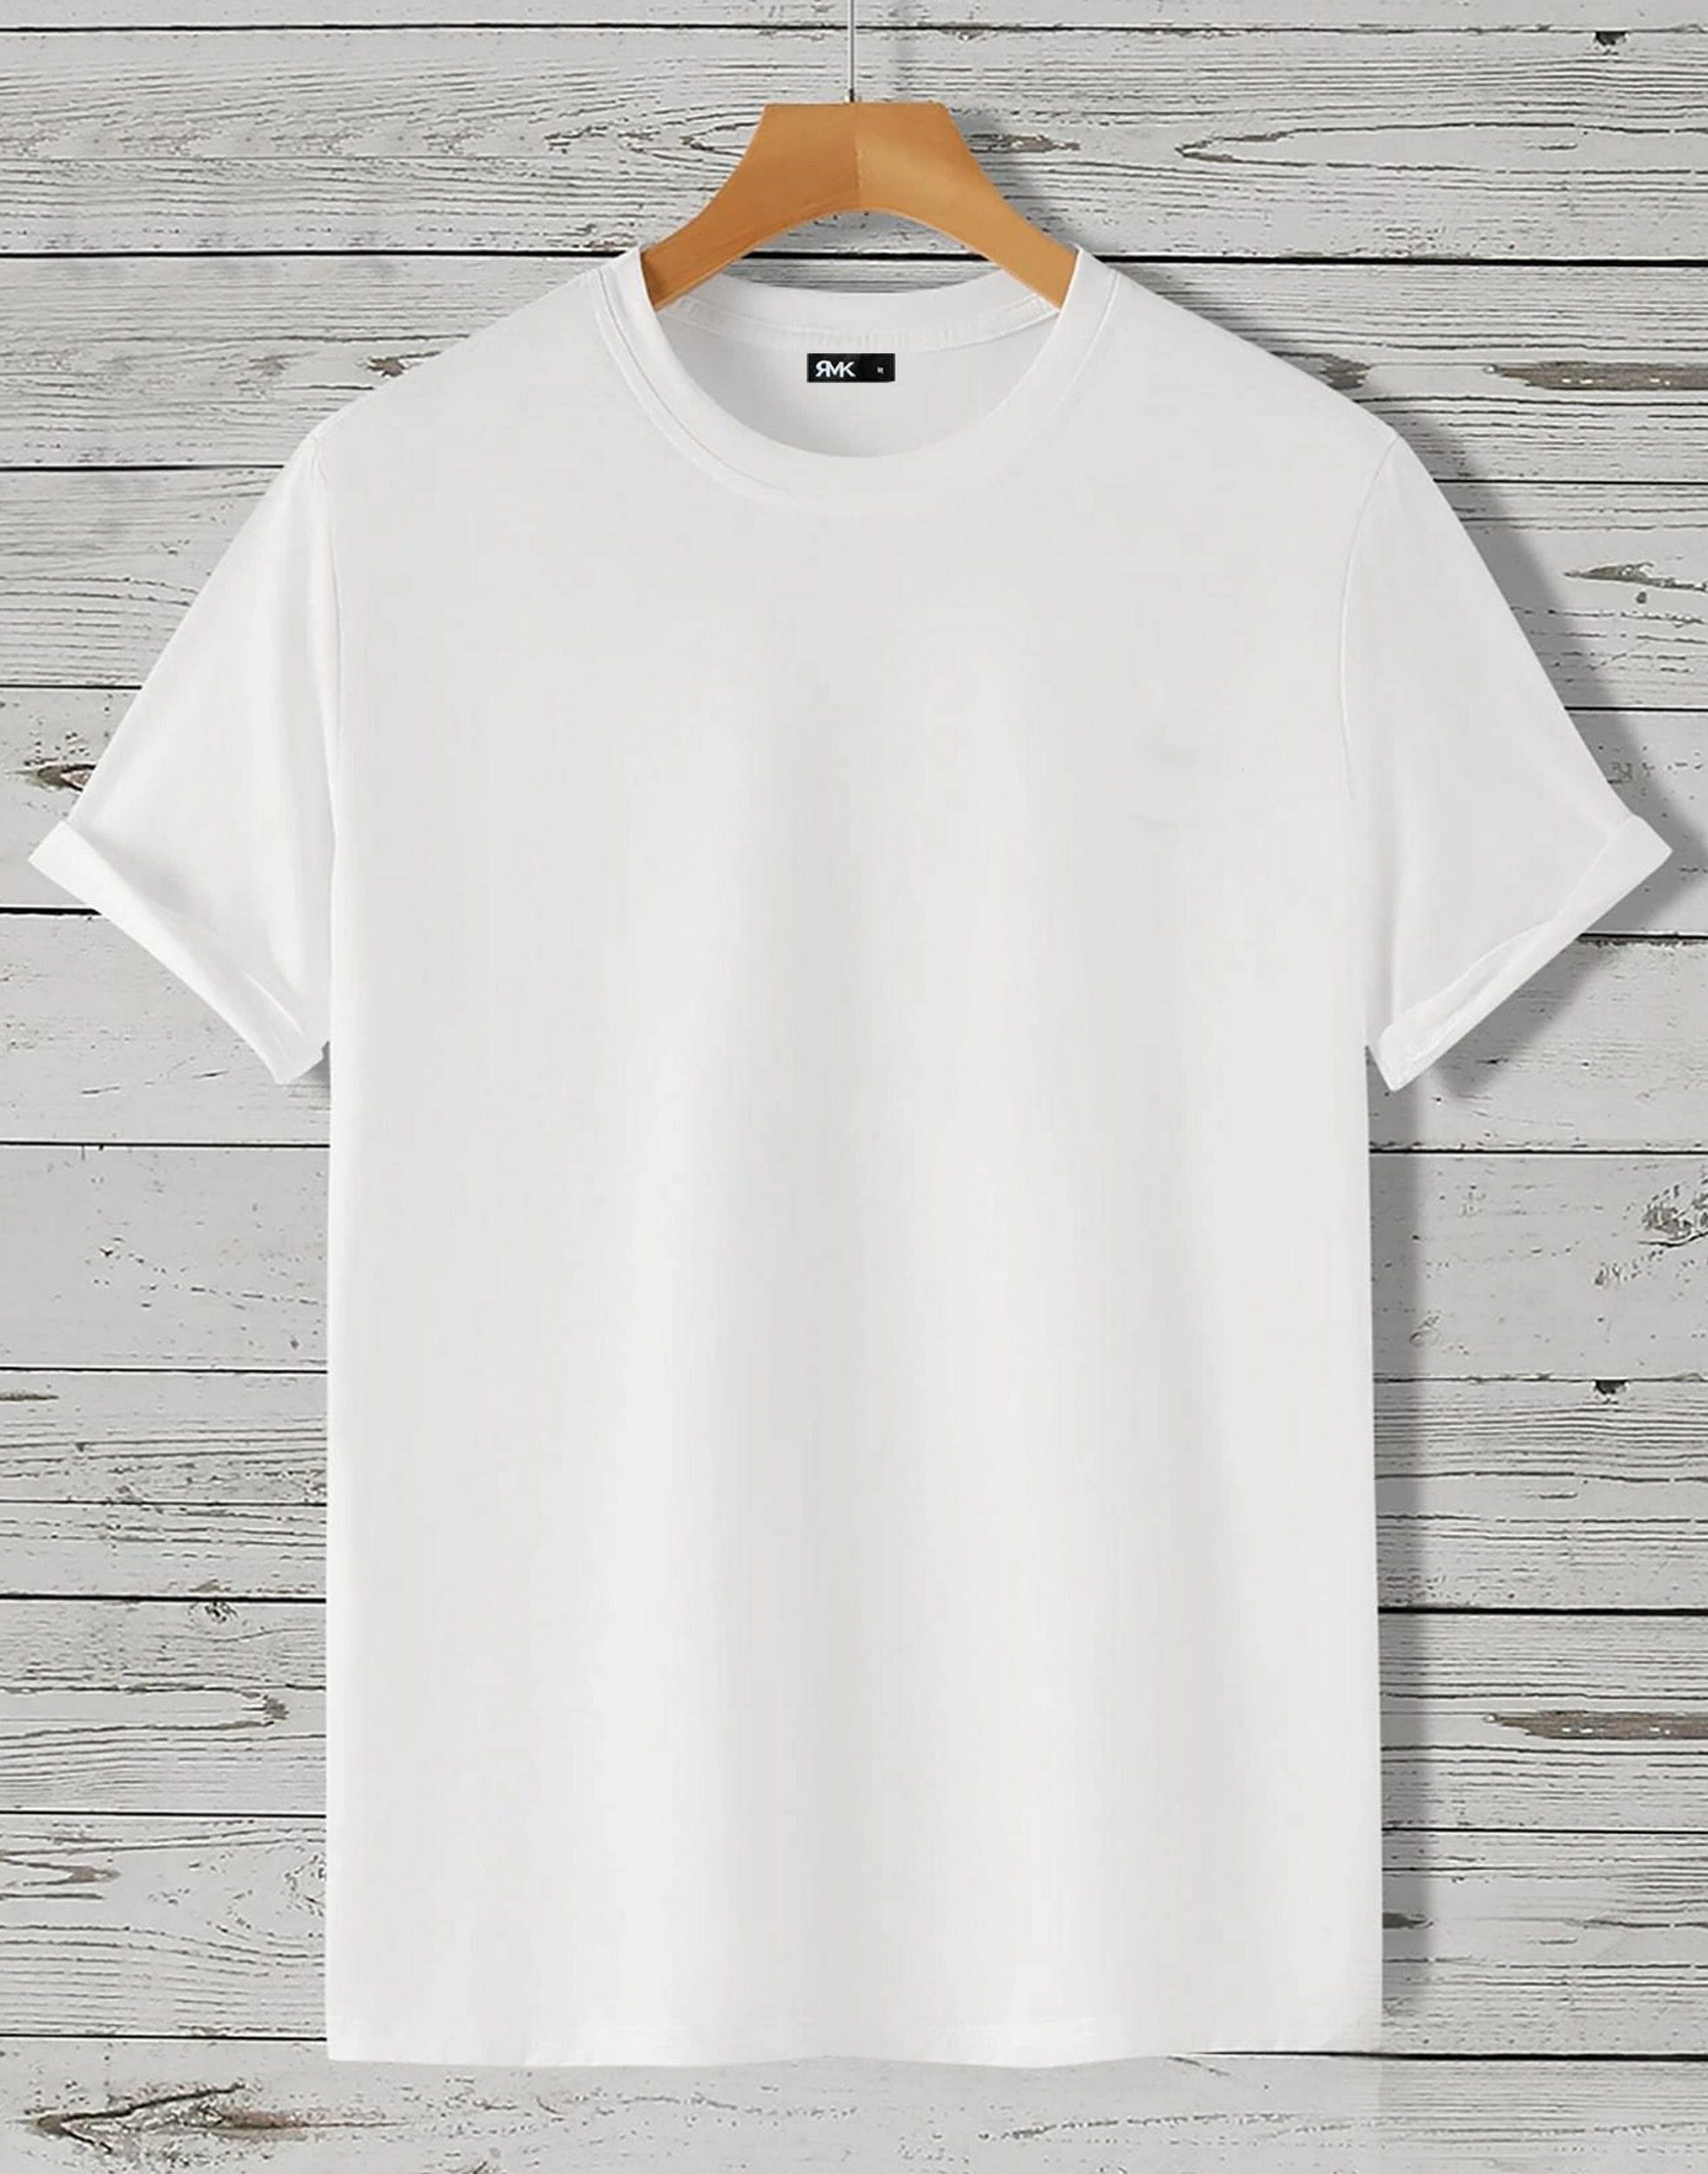 Weiß RMK in Rundhalsausschnitt Unifarbe, T-Shirt aus Baumwolle, Rundhals T-Shirt mit Herren Einfarbig